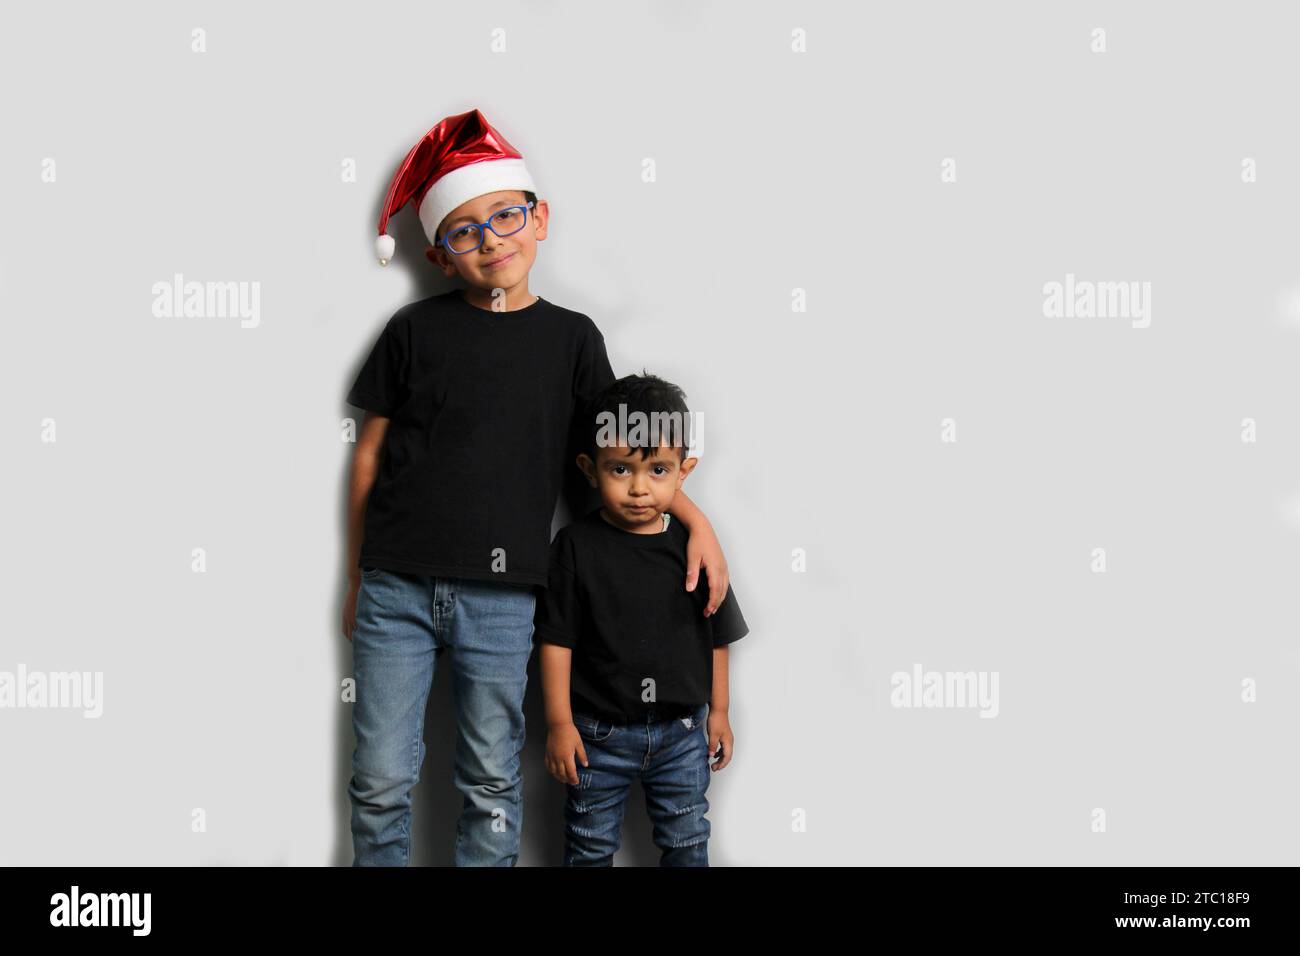 Dunkelhäutige Latino-Kinder, älterer Bruder mit Weihnachtsmütze kümmert sich um seinen jüngeren Bruder und verbringt gute Zeit an den Feiertagen, um zu feiern Stockfoto